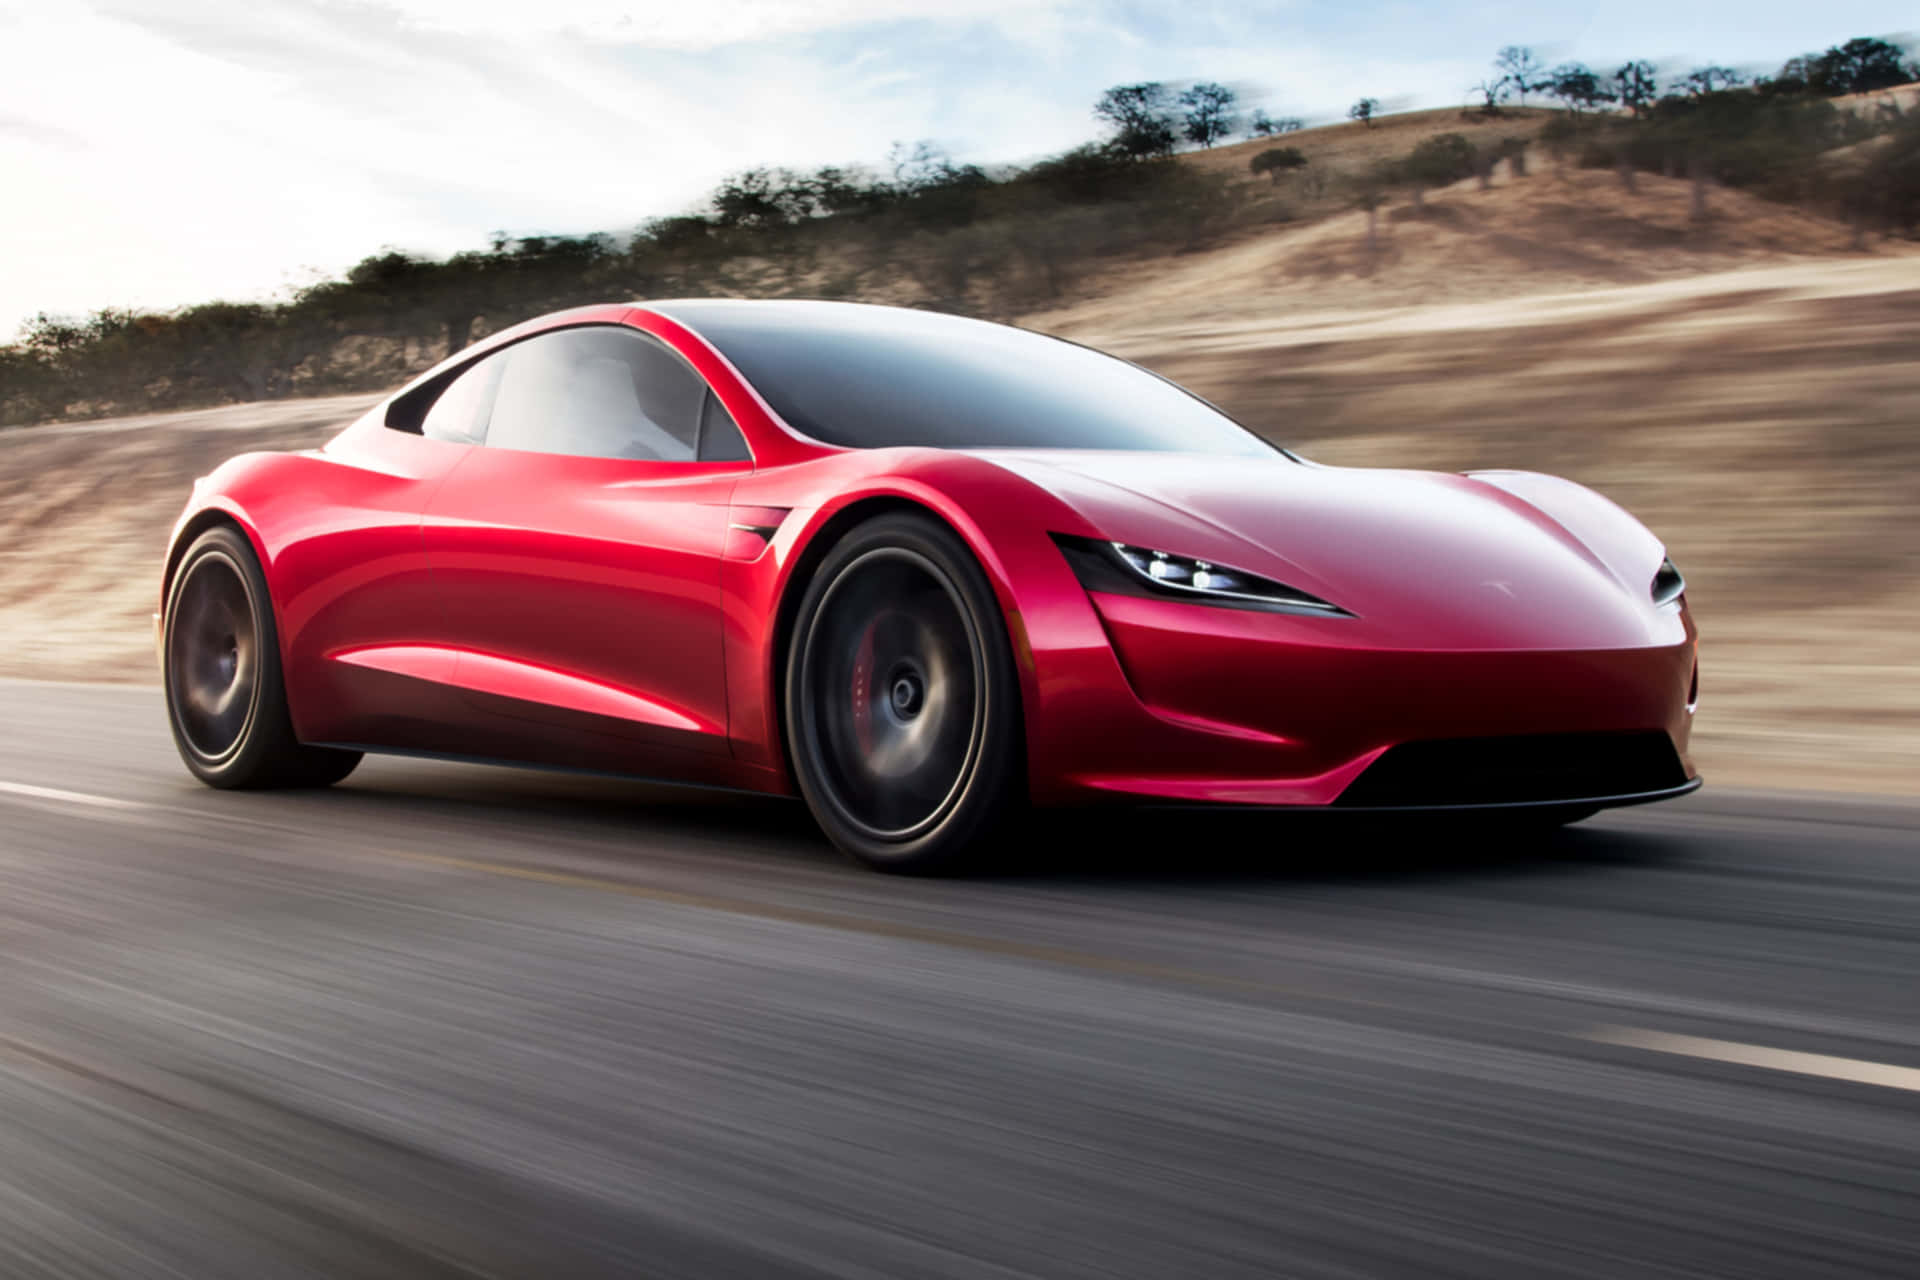 Bilddes 2021 Roten Tesla Roadsters